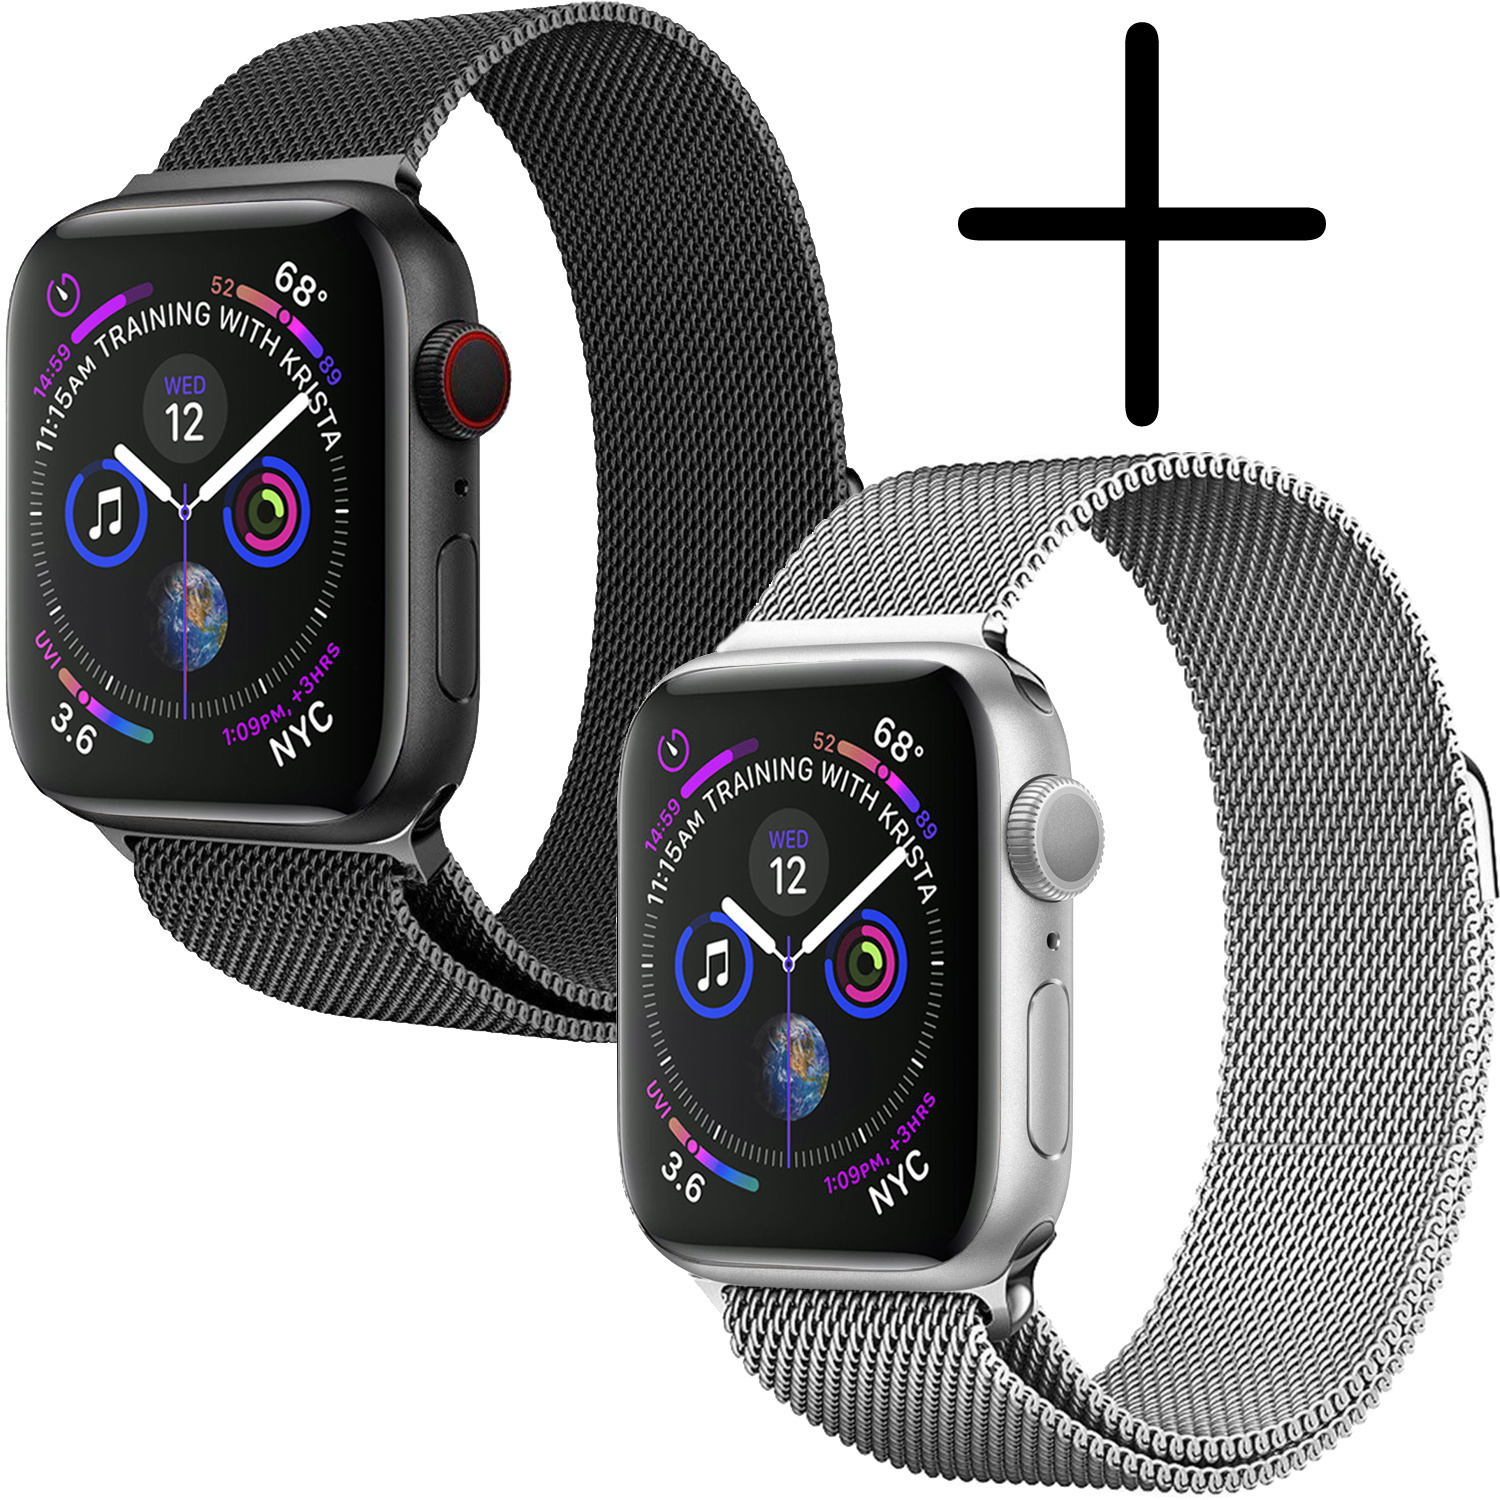 BASEY. Geschikt Voor Apple Watch 7 Bandje Milanees (41 mm) - Horloge Band Geschikt Voor Apple Watch 7 Bandje Met Magneetsluiting - Zwart En Zilver